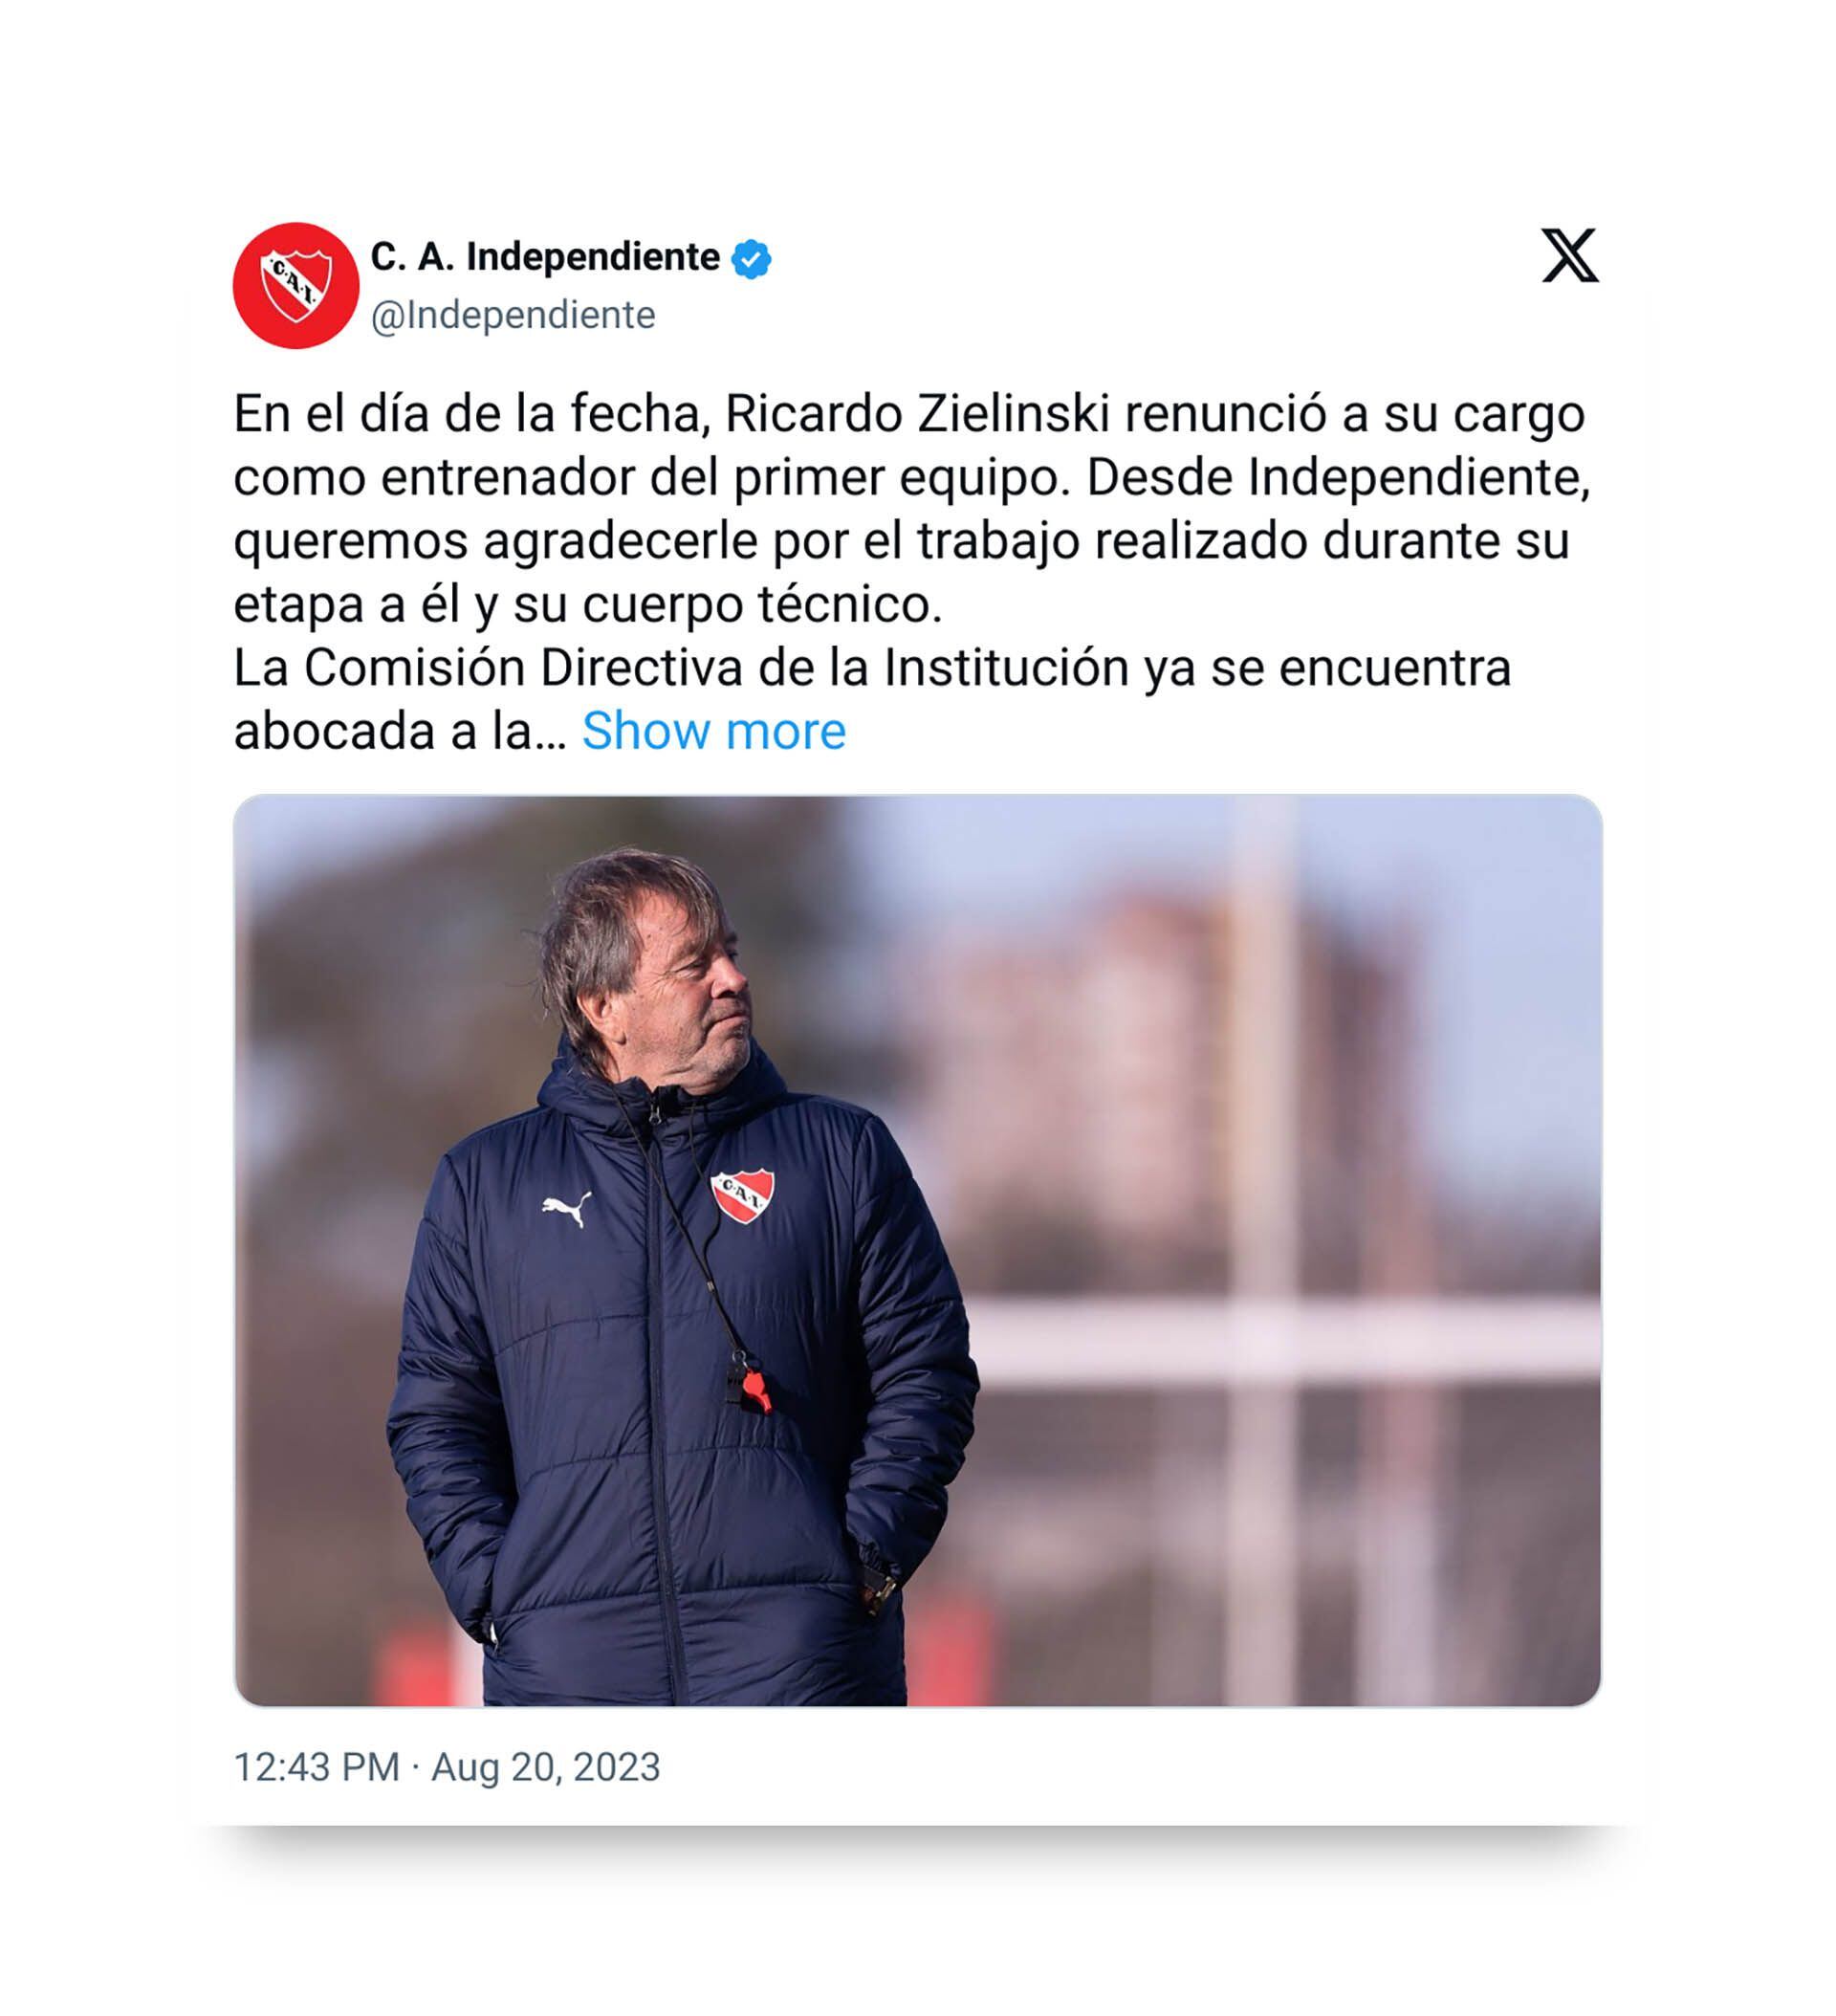 El comunicado de Independiente tras la renuncia de Zielinski